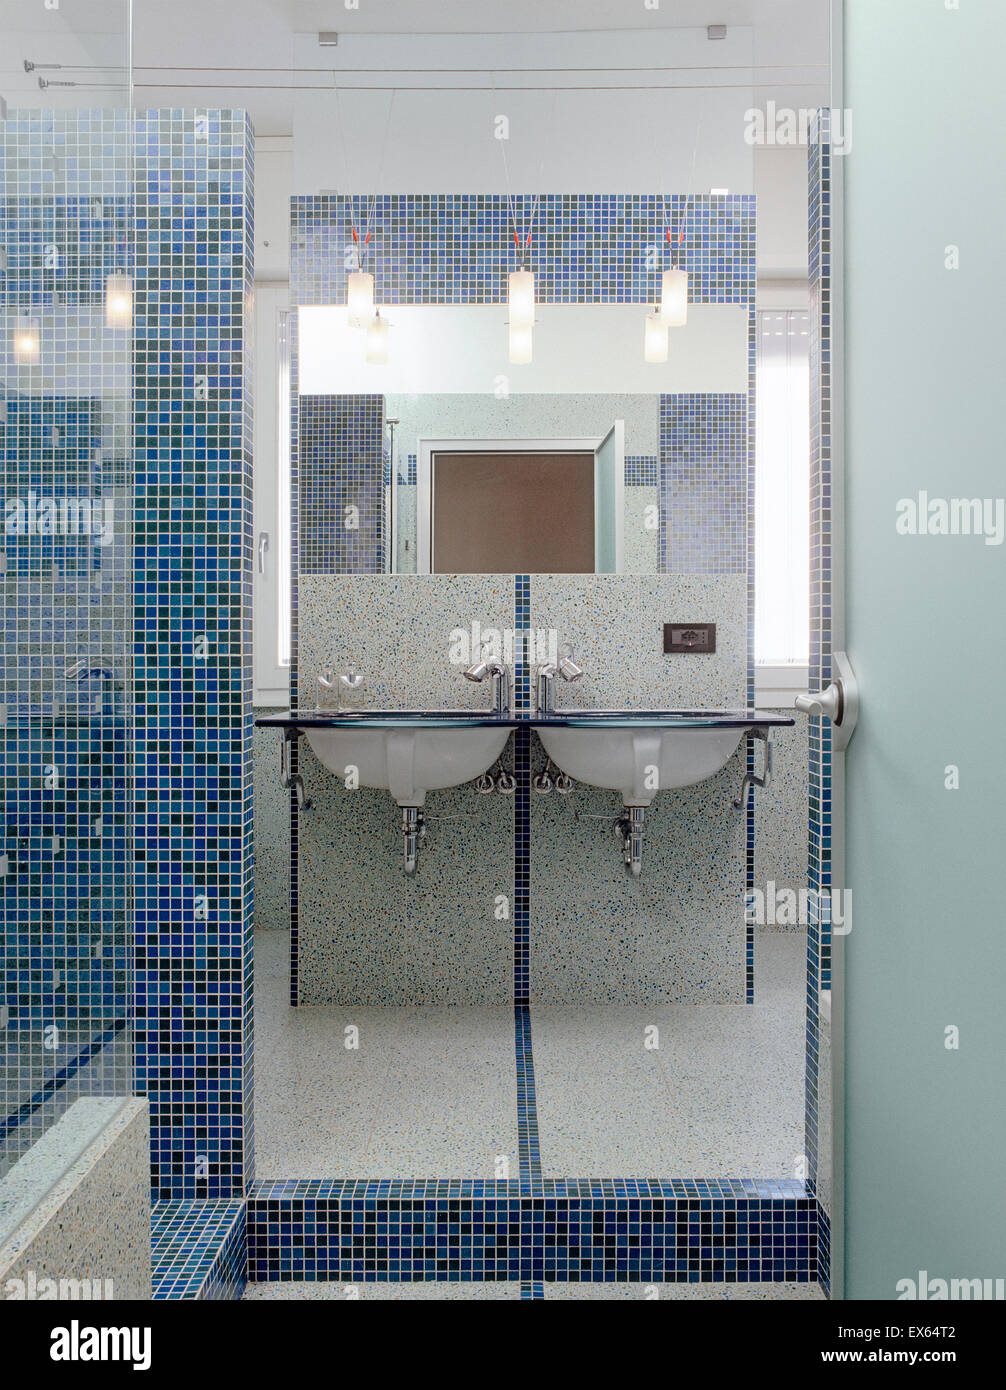 Dettaglio di una vasca in bagno moderno di cui la parete e il pavimento è rivestito con piastrelle a mosaico Foto Stock